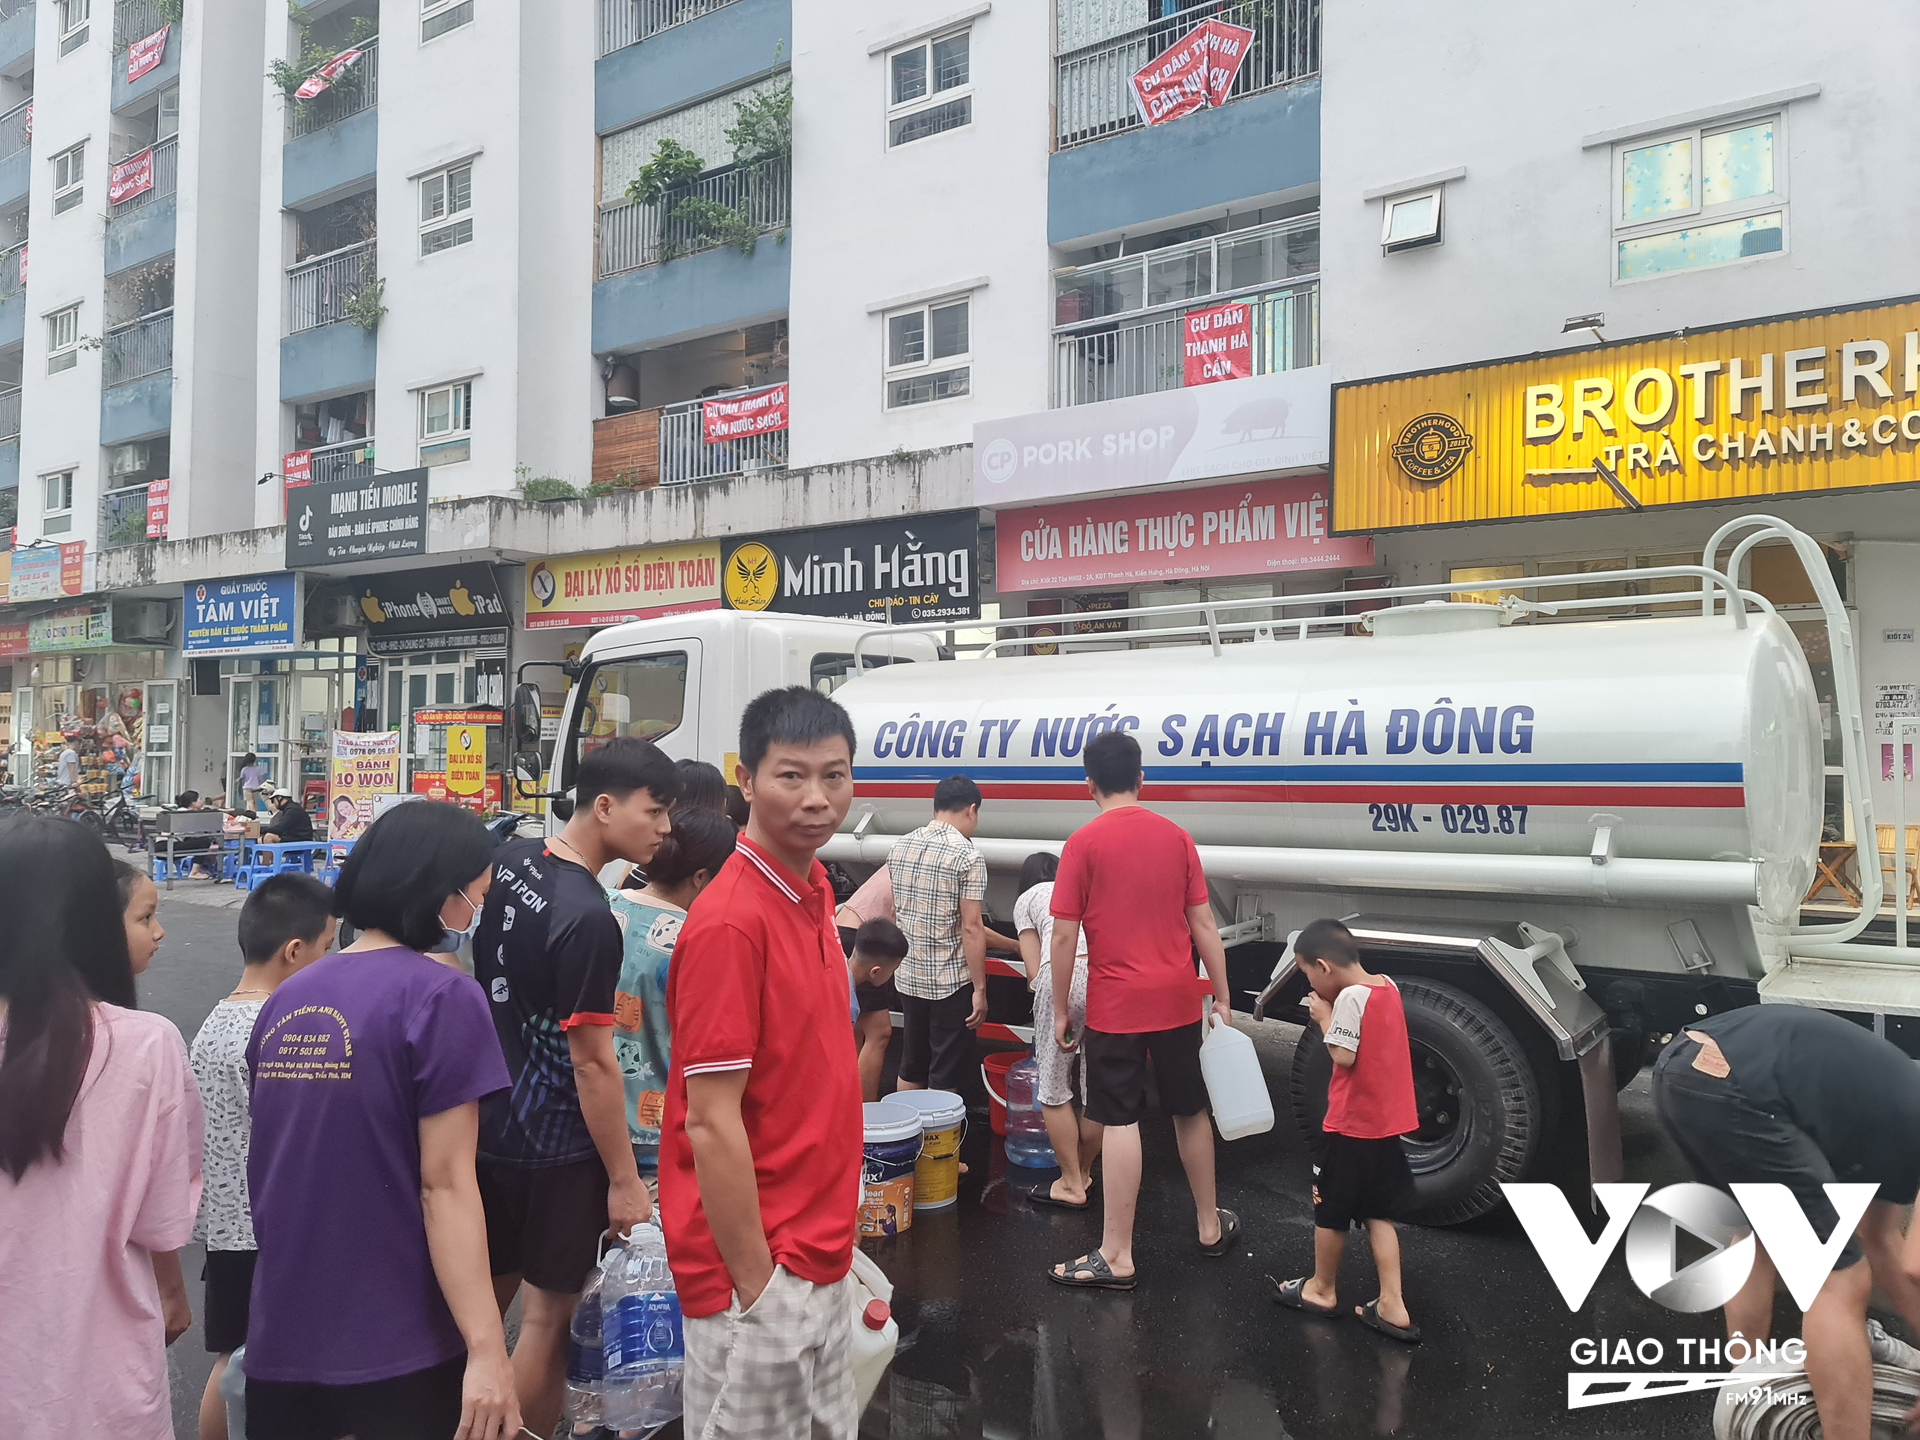 Chiều 21/10, cư dân 6 tòa cũ của KĐT Thanh Hà đã được tiếp tế nước từ một xe téc của công ty nước sạch Hà Đông